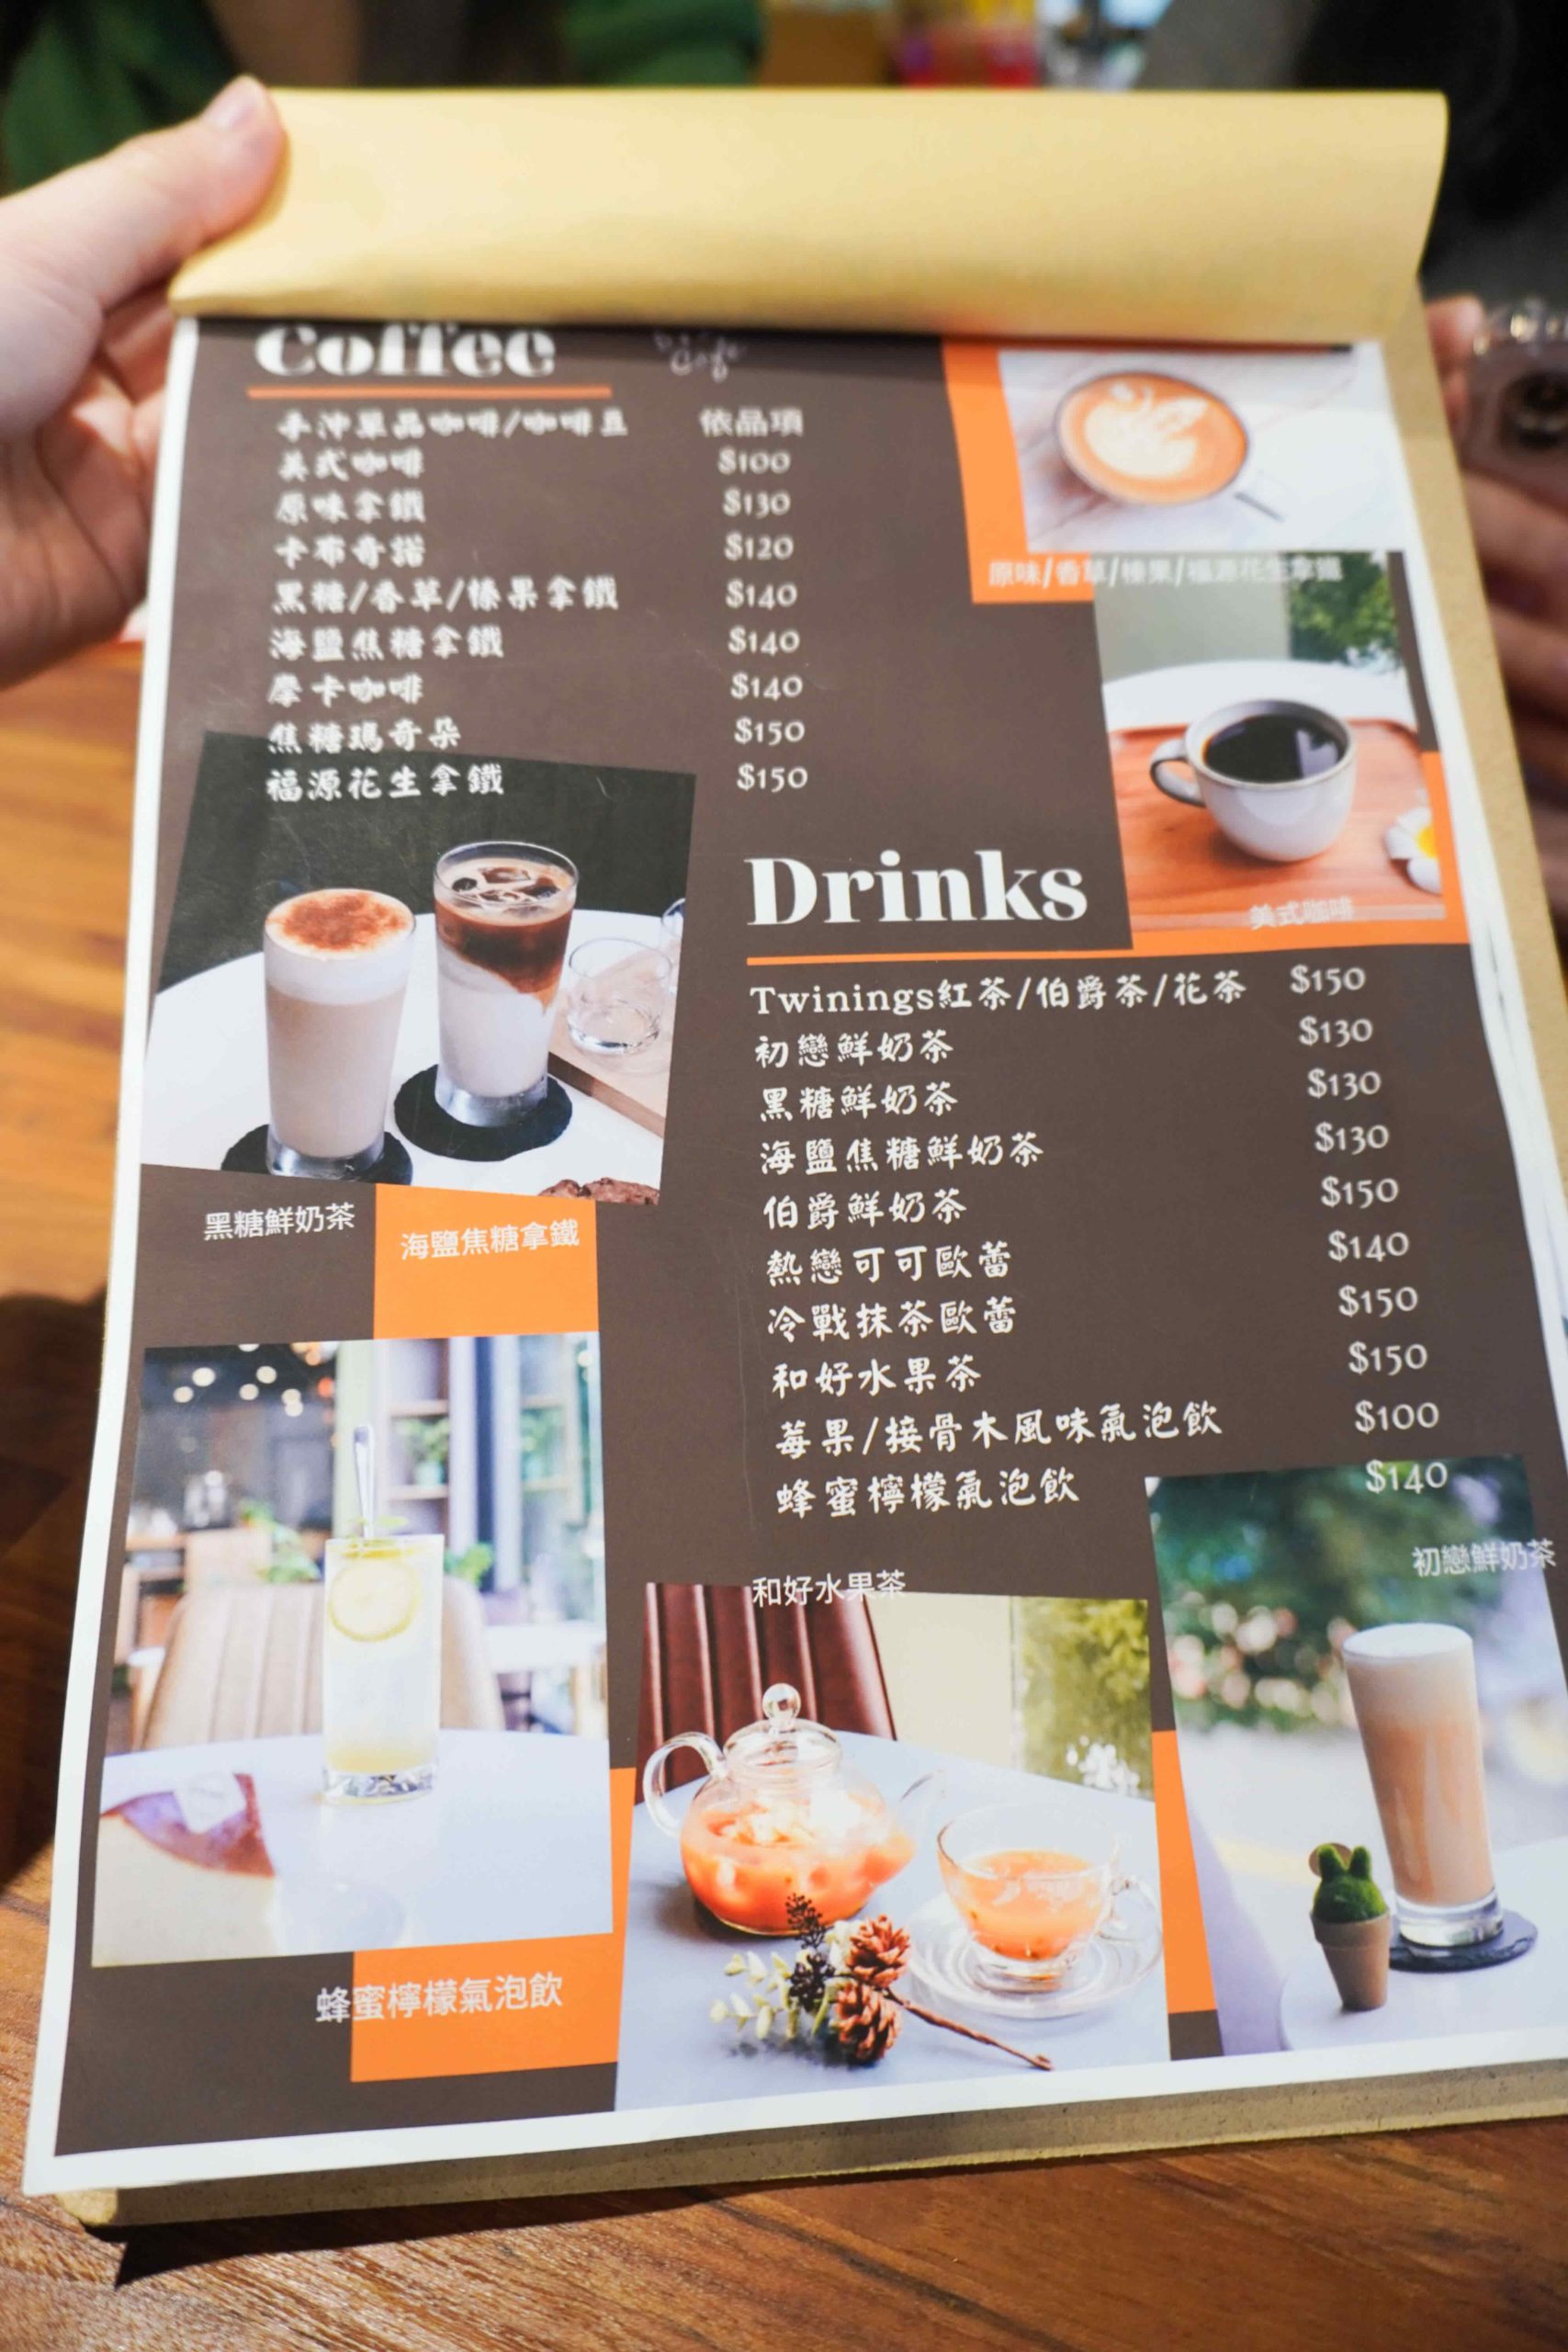 5.15 cafe menu2